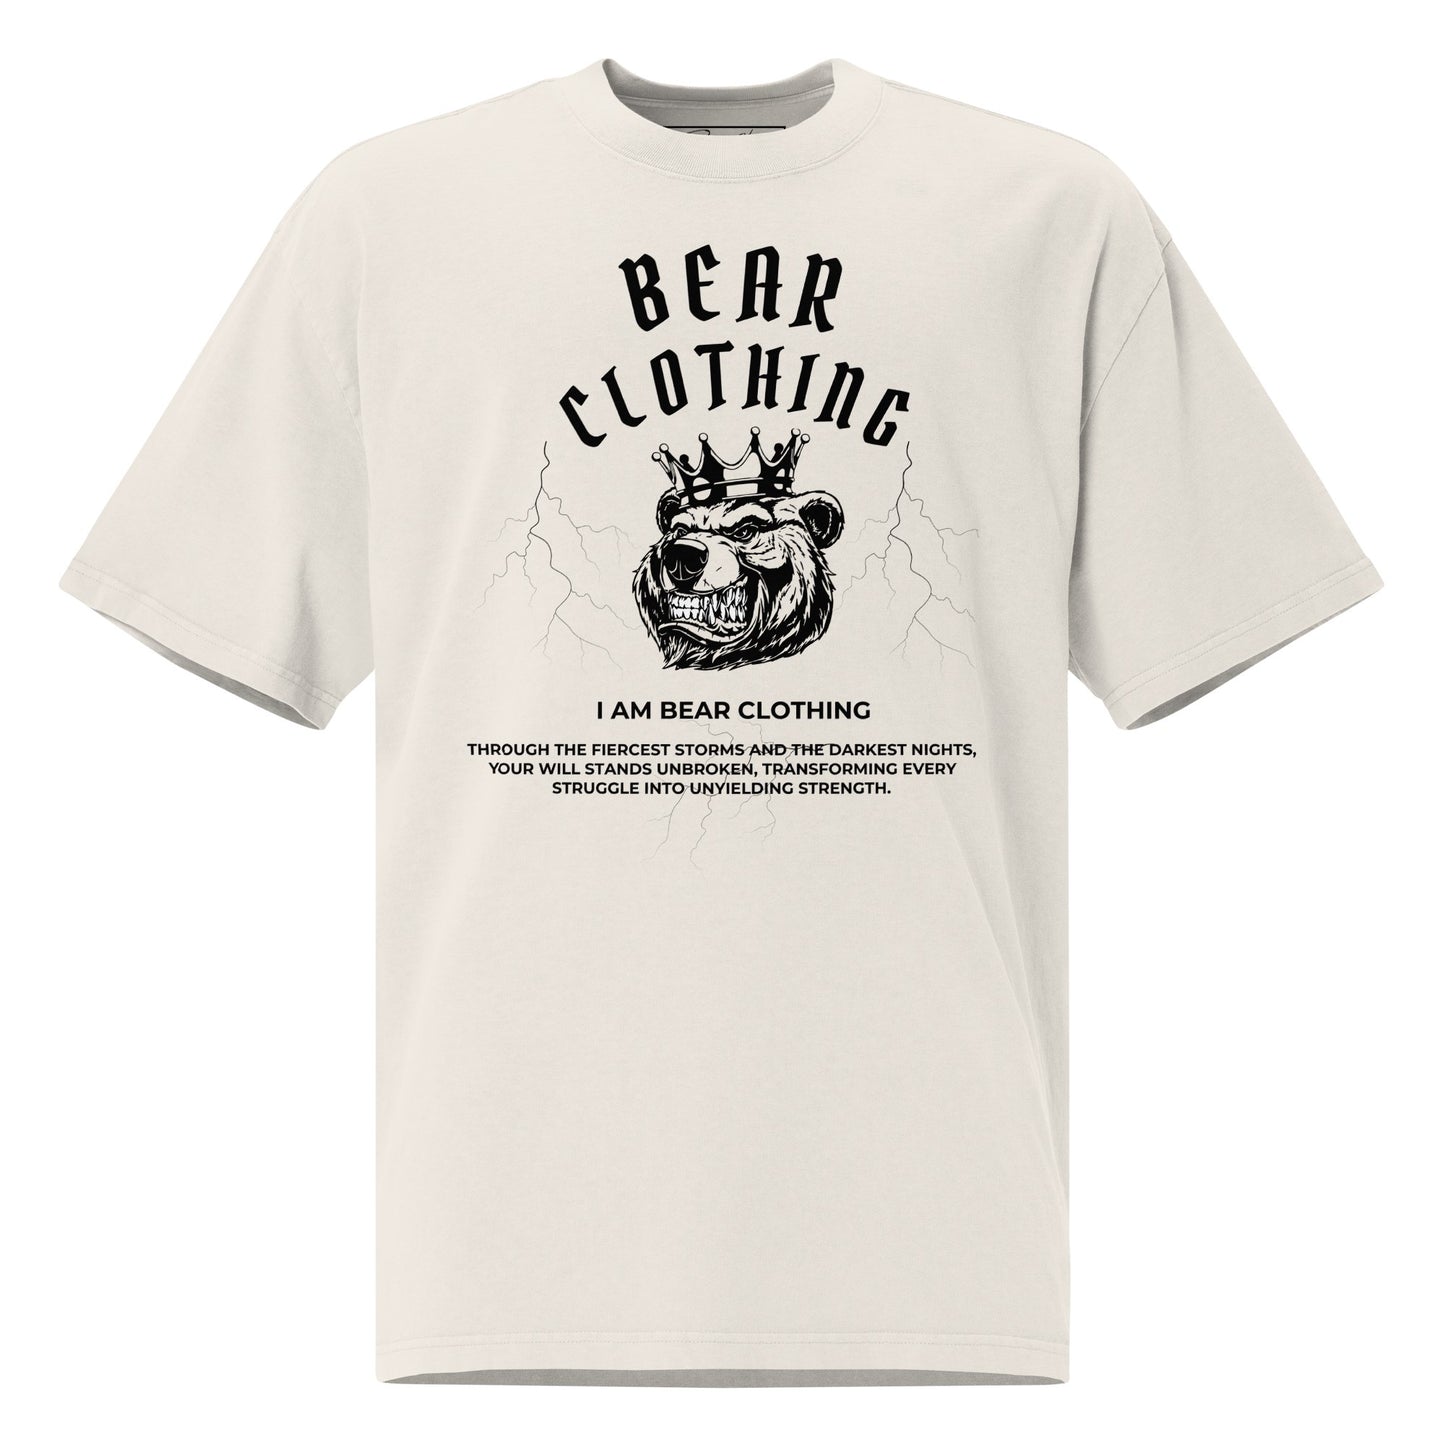 I am bear clothing oversized faded graphic t-shirt. - Bearclothing